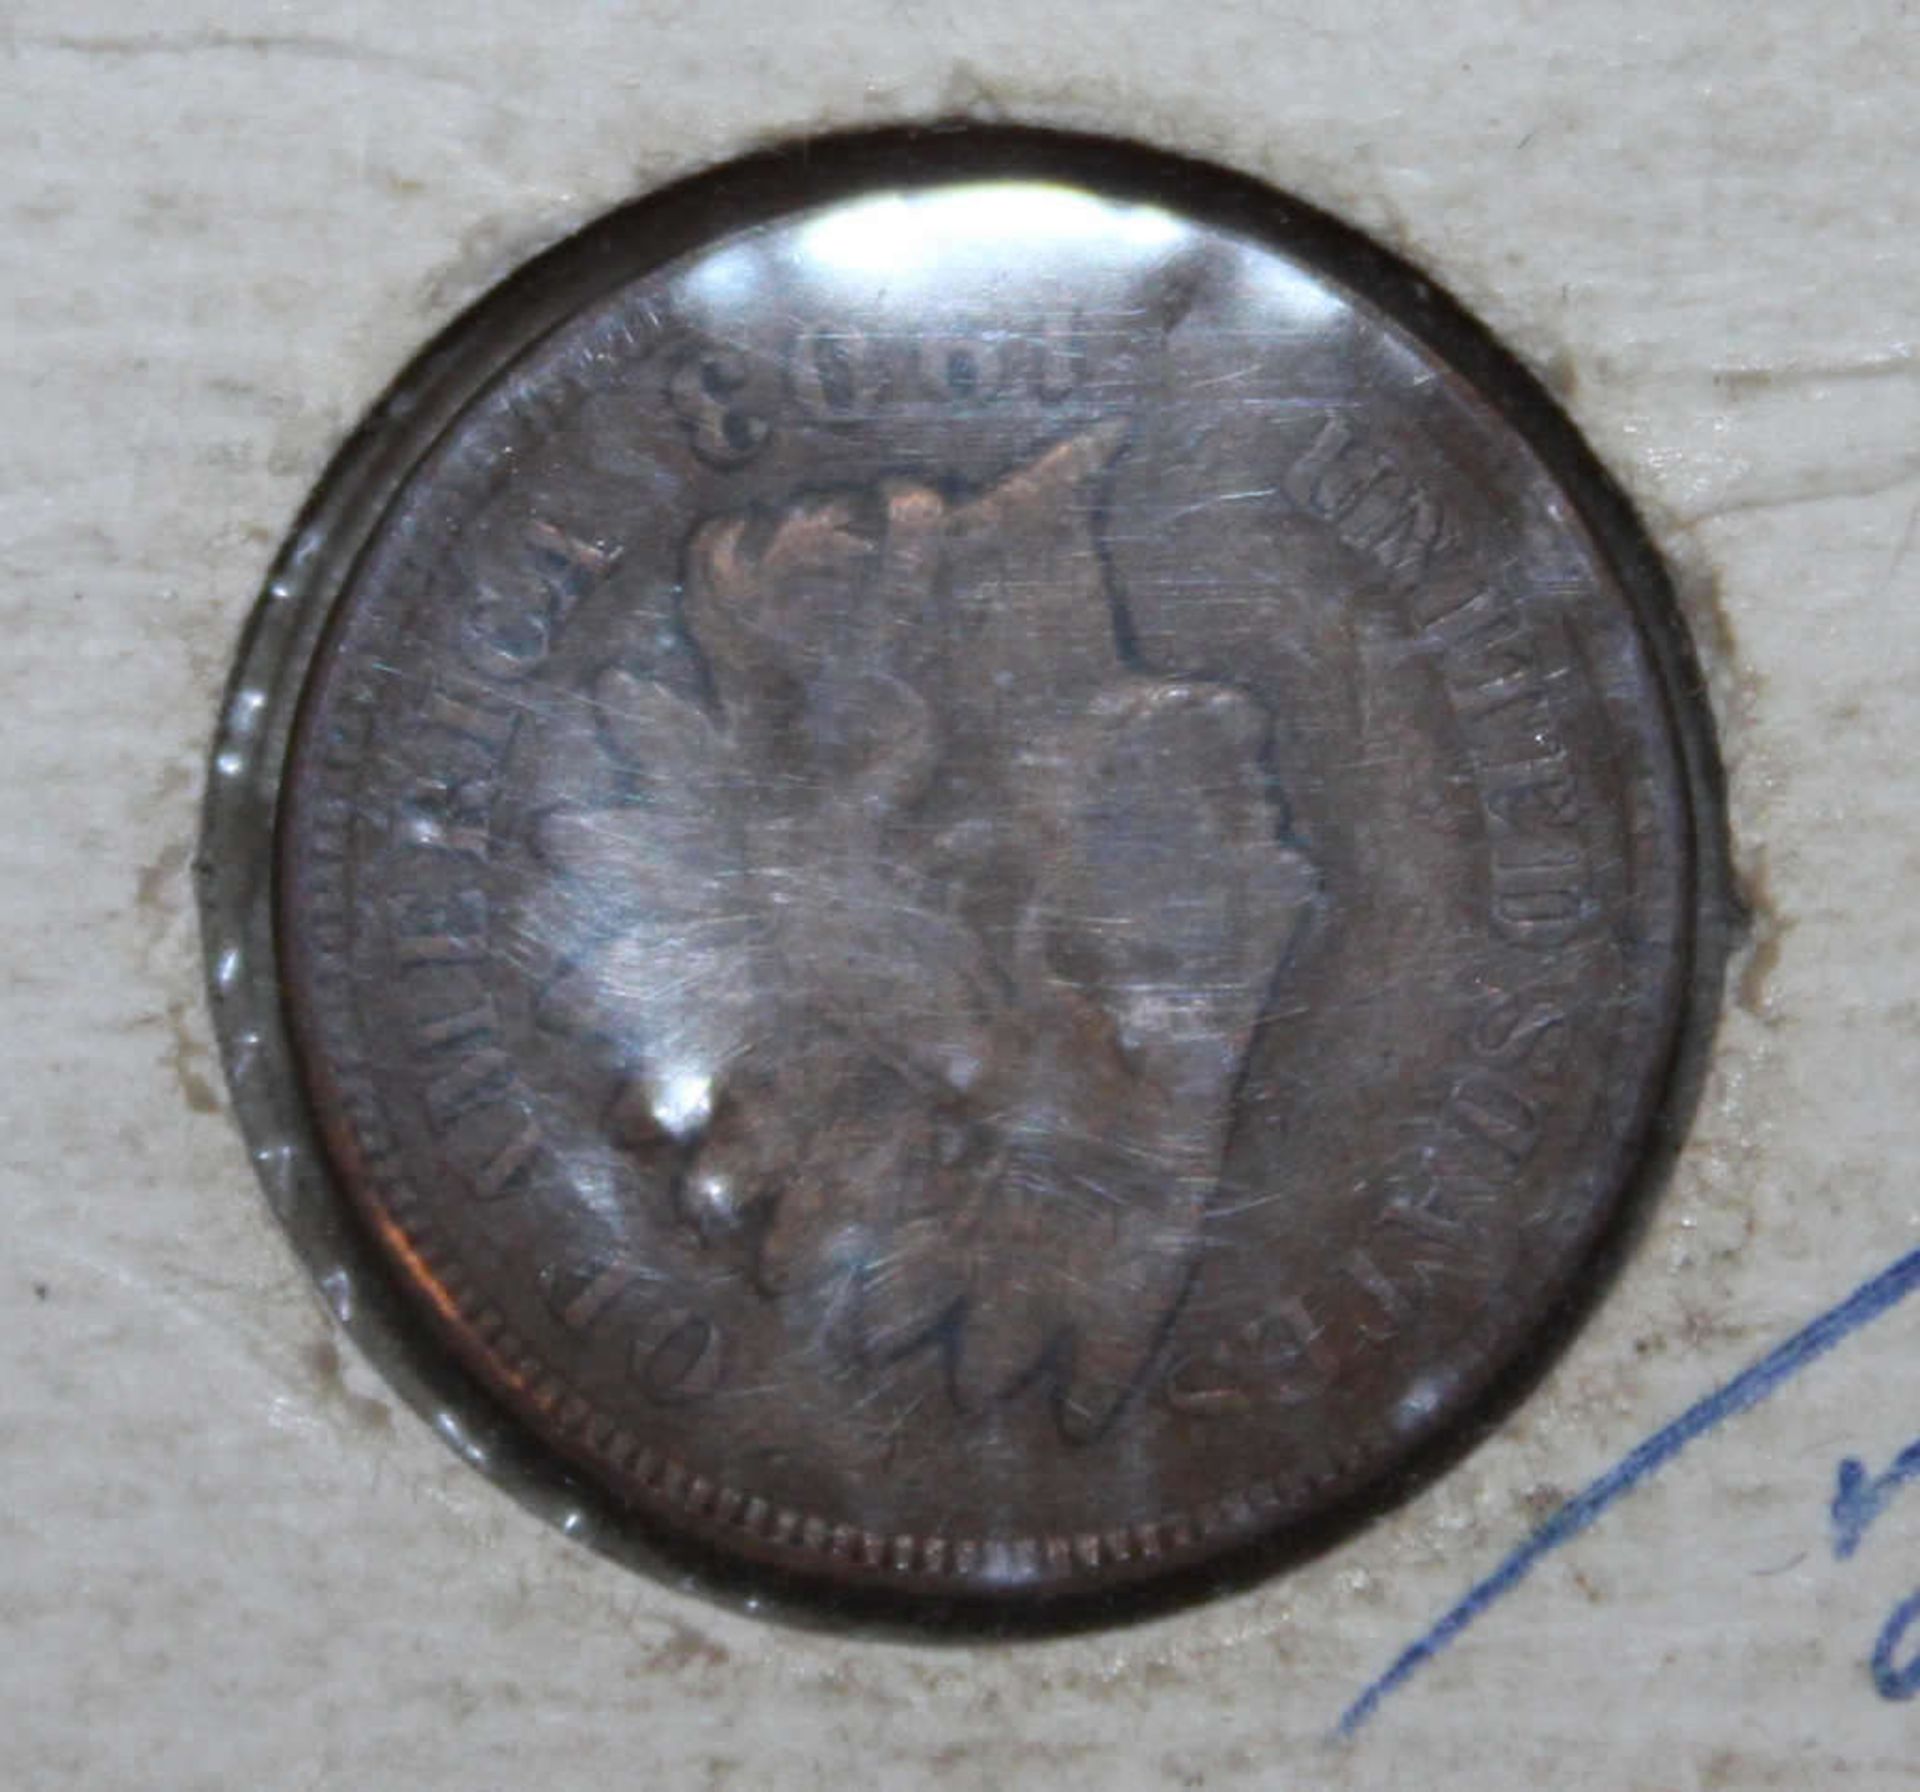 1 Cent Münze Vereinigte Staaten von Amerika von 1903, Zustand sehr schön. 1 Cent Coin United